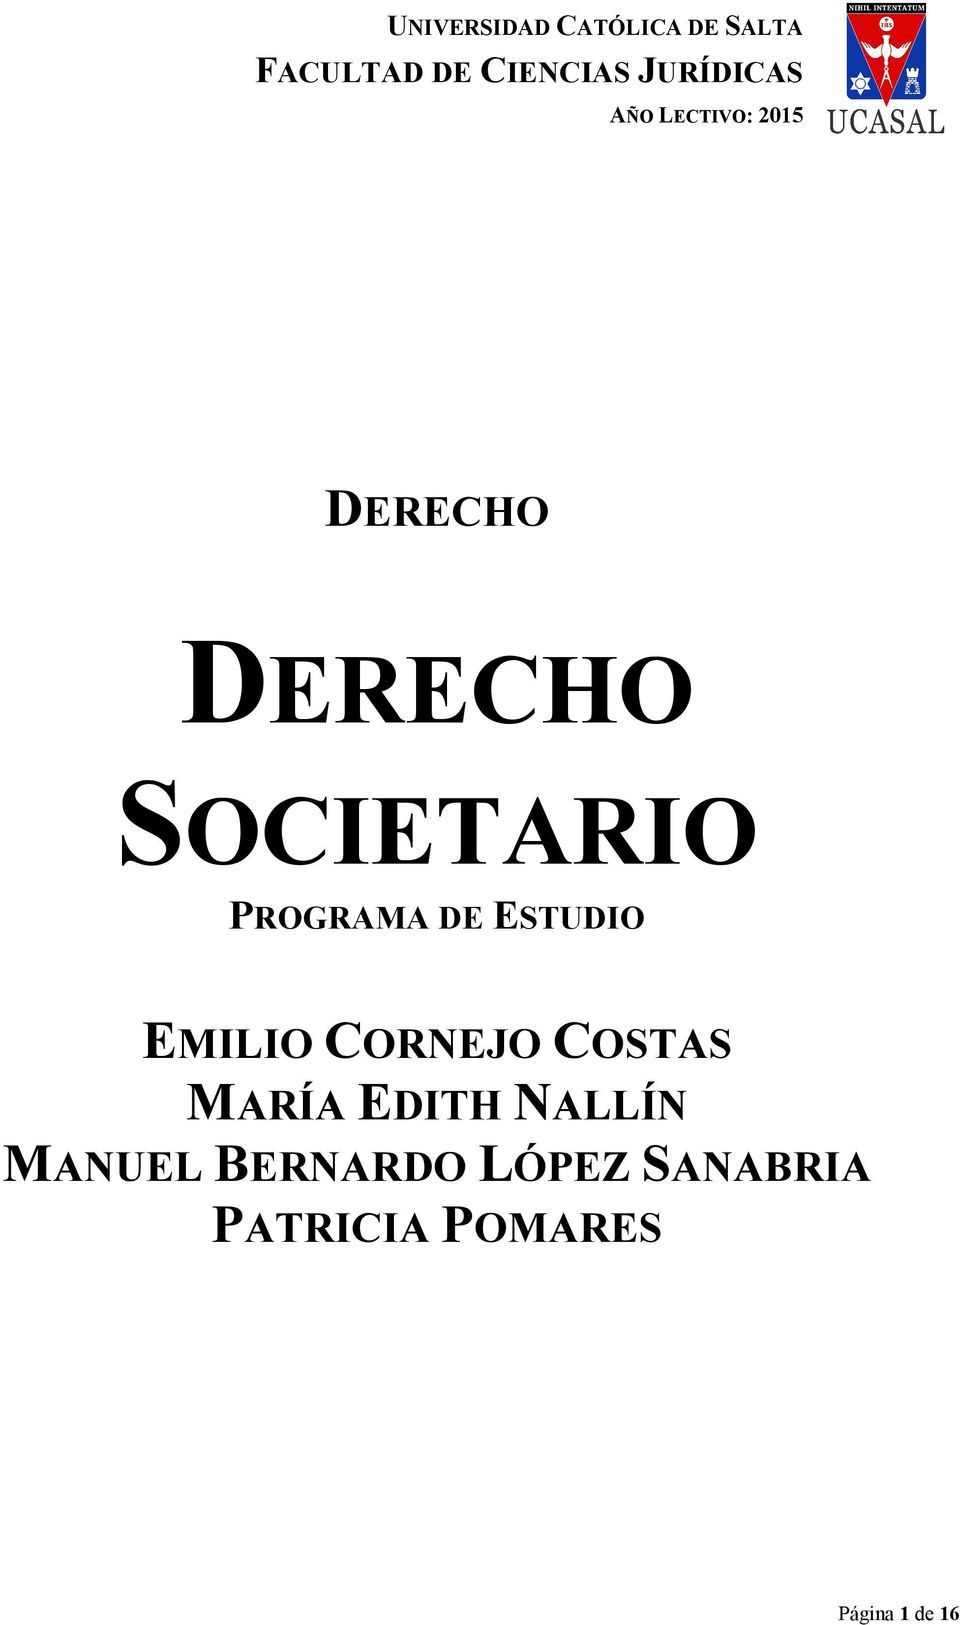 MARÍA EDITH NALLÍN MANUEL BERNARDO